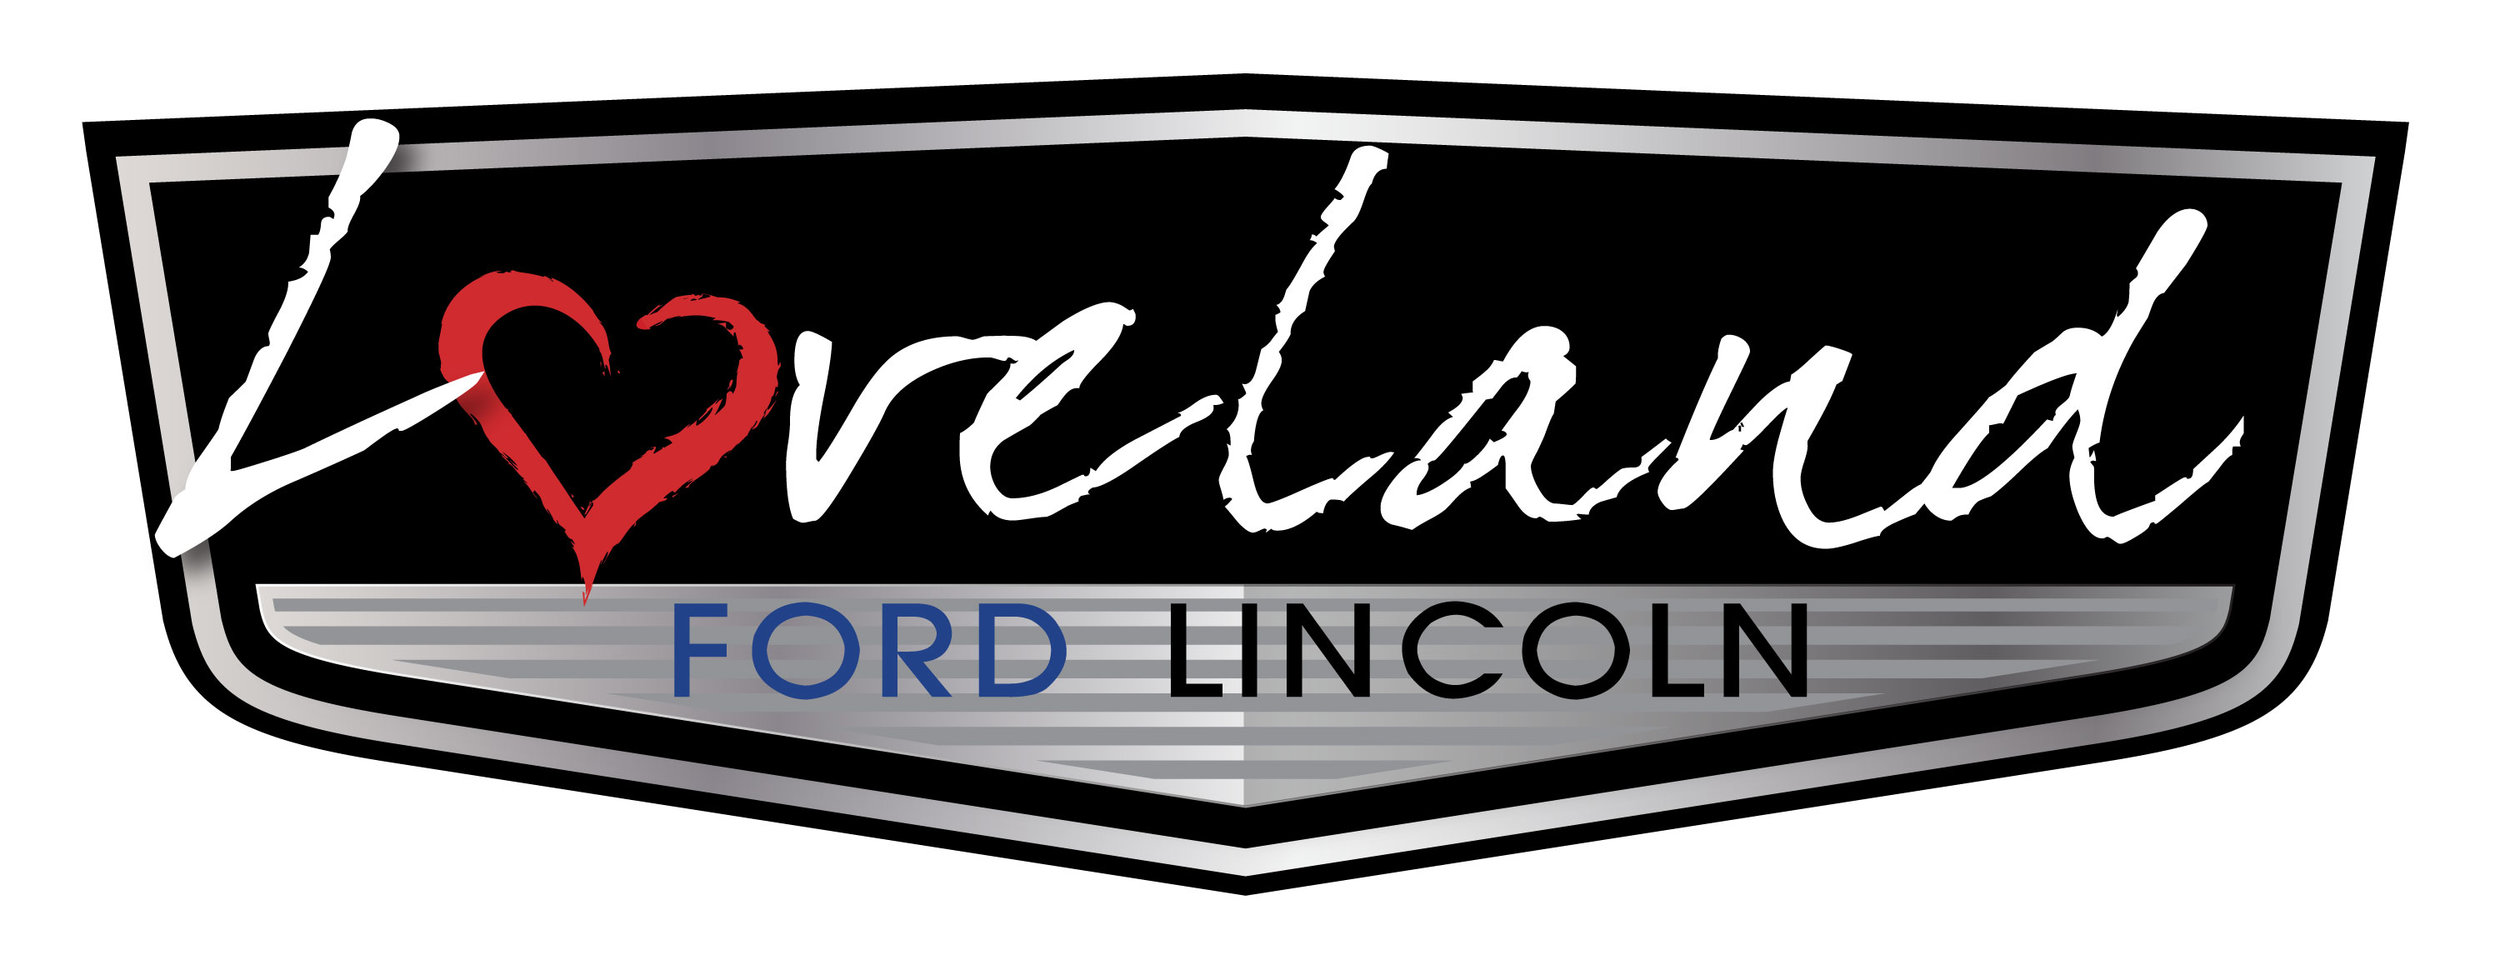 LovelandFord_Logo.jpg